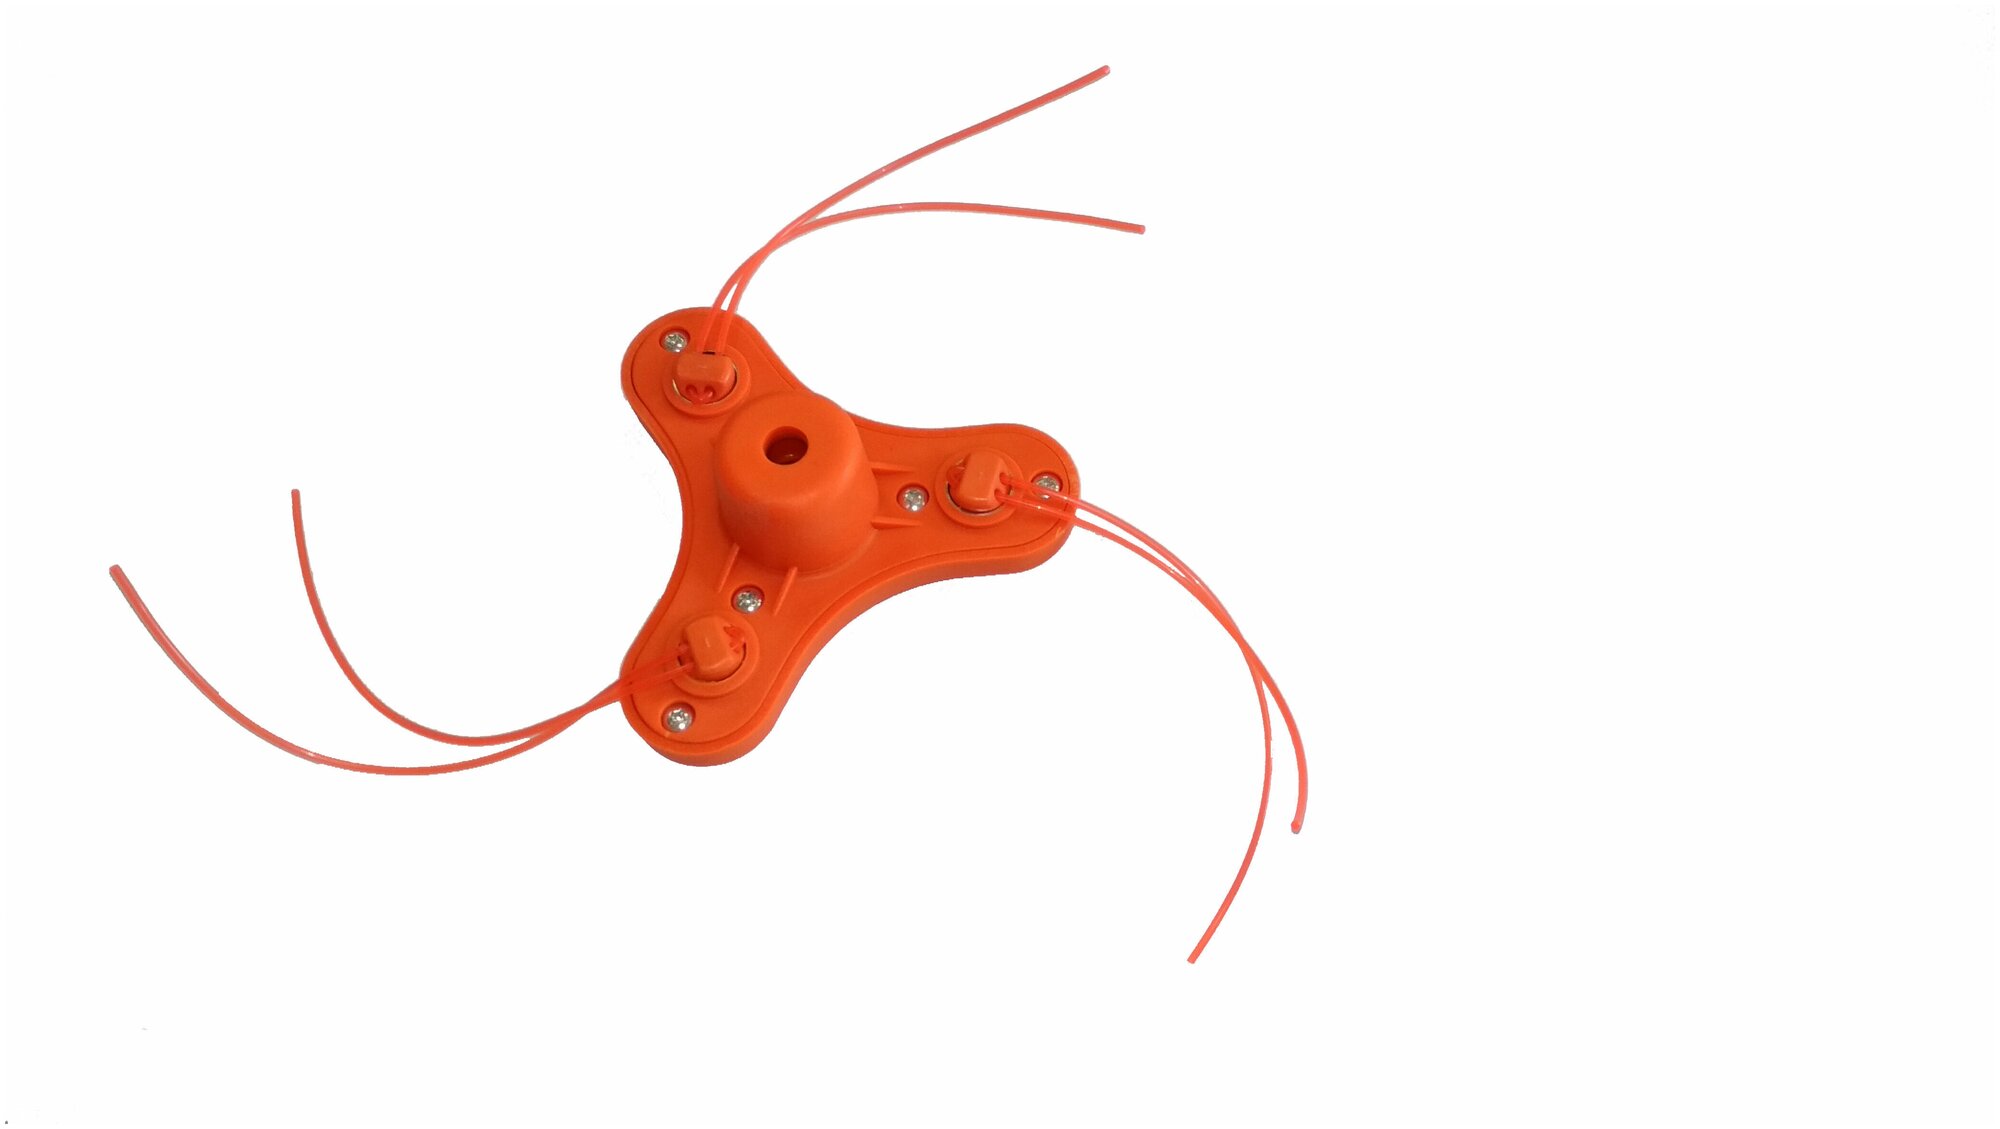 Катушка (головка) триммерная оранжевая с вращающимся держателем лески блистер FZ-1207 - фотография № 2